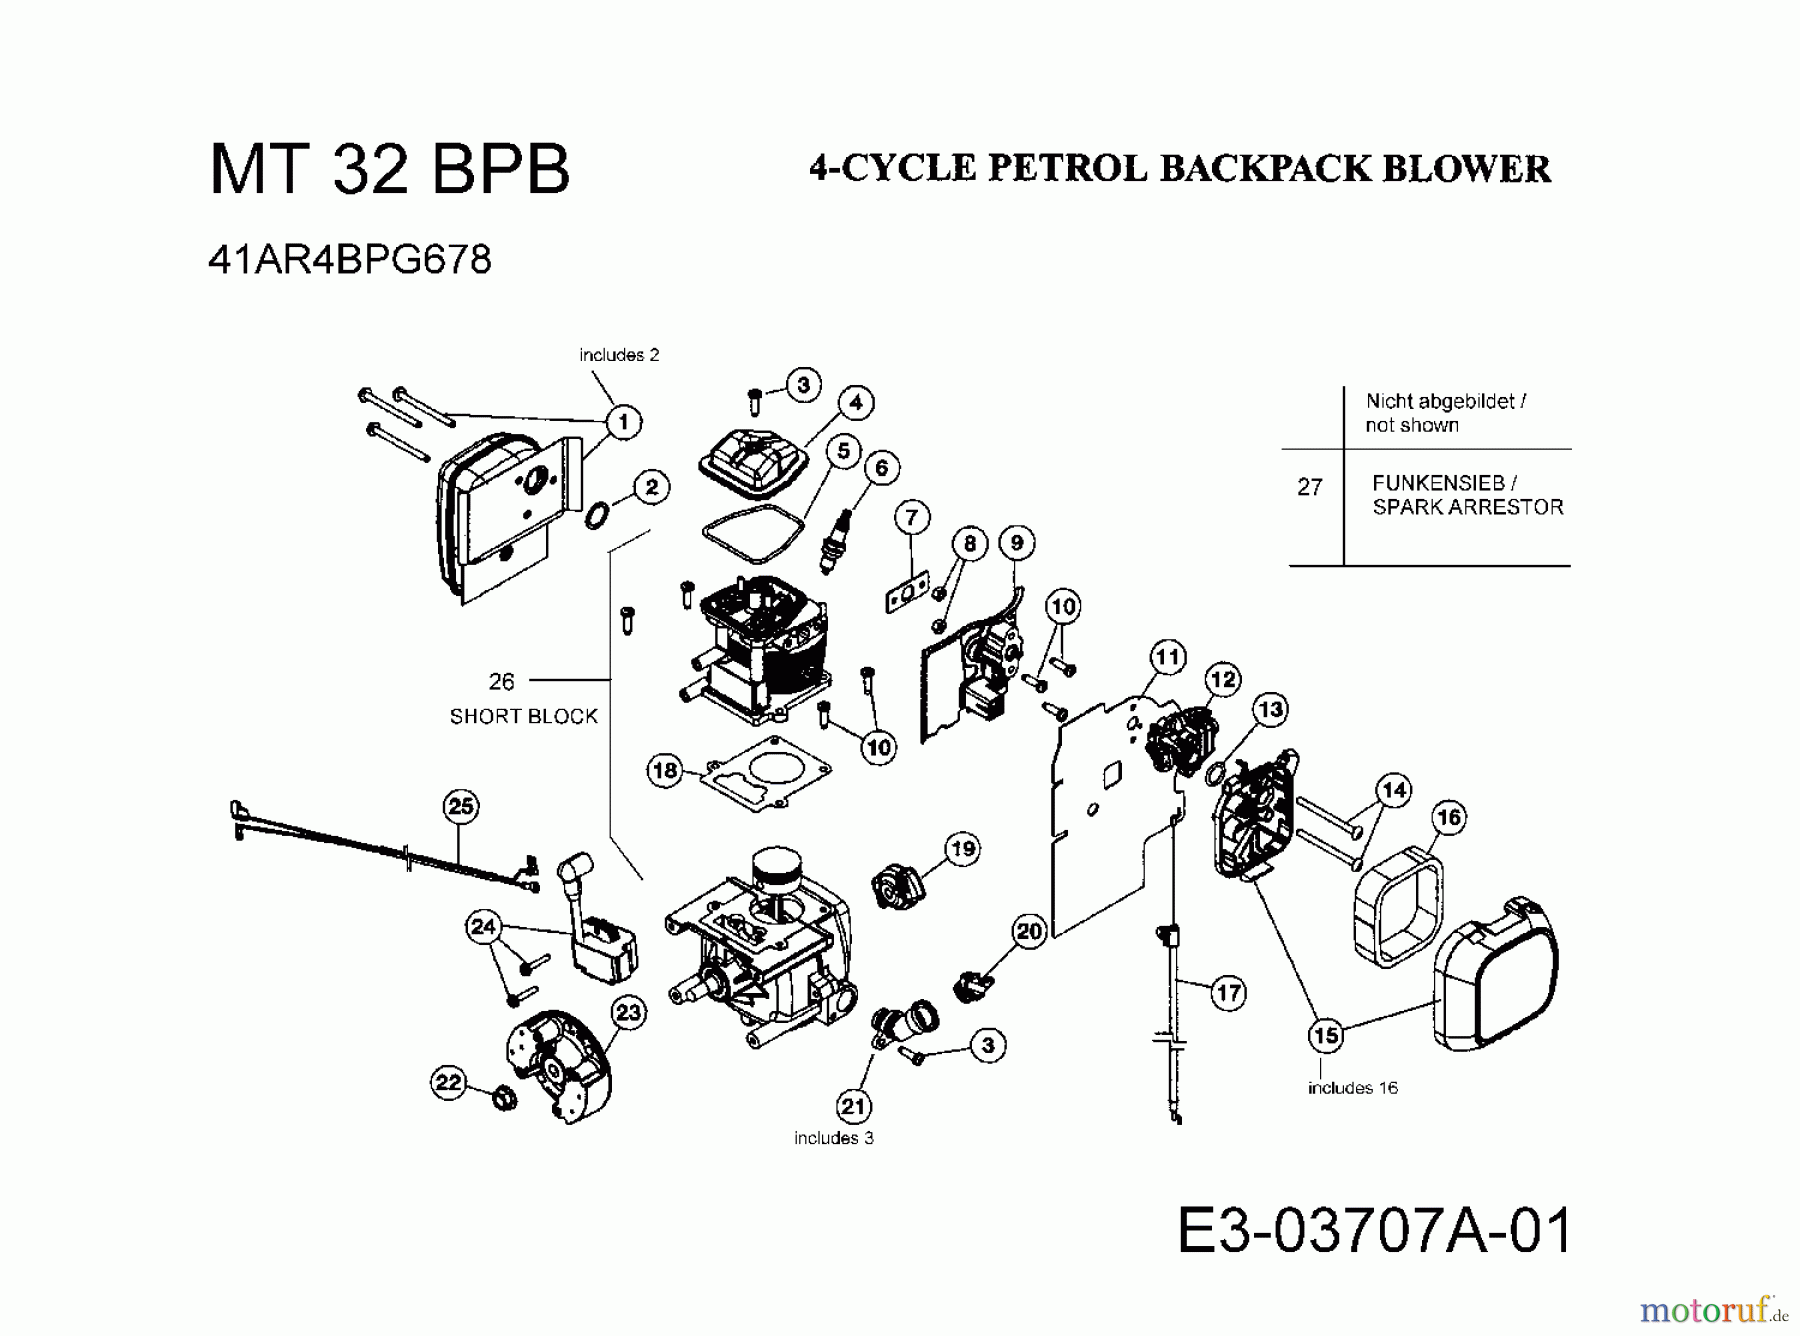  MTD Laubbläser, Laubsauger MT 32 BPB 41AR4BPG678  (2008) Motor